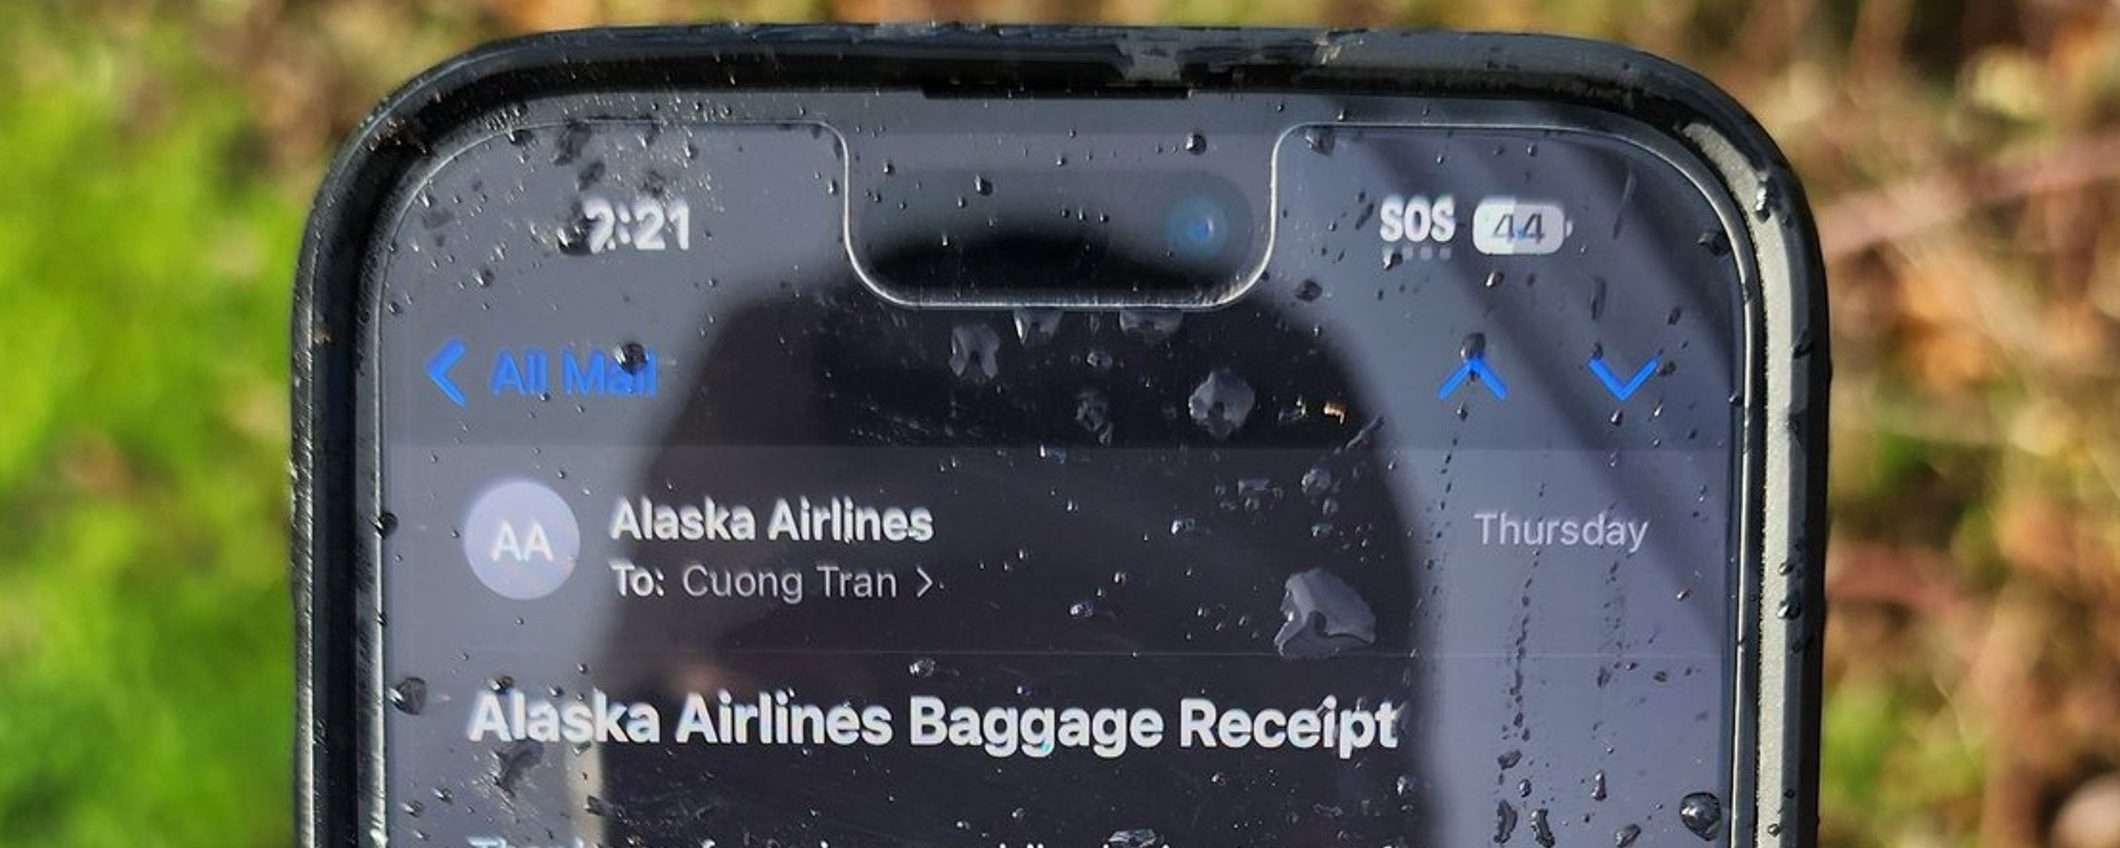 Alaska Airlines, trovato integro un iPhone precipitato da 5000 metri